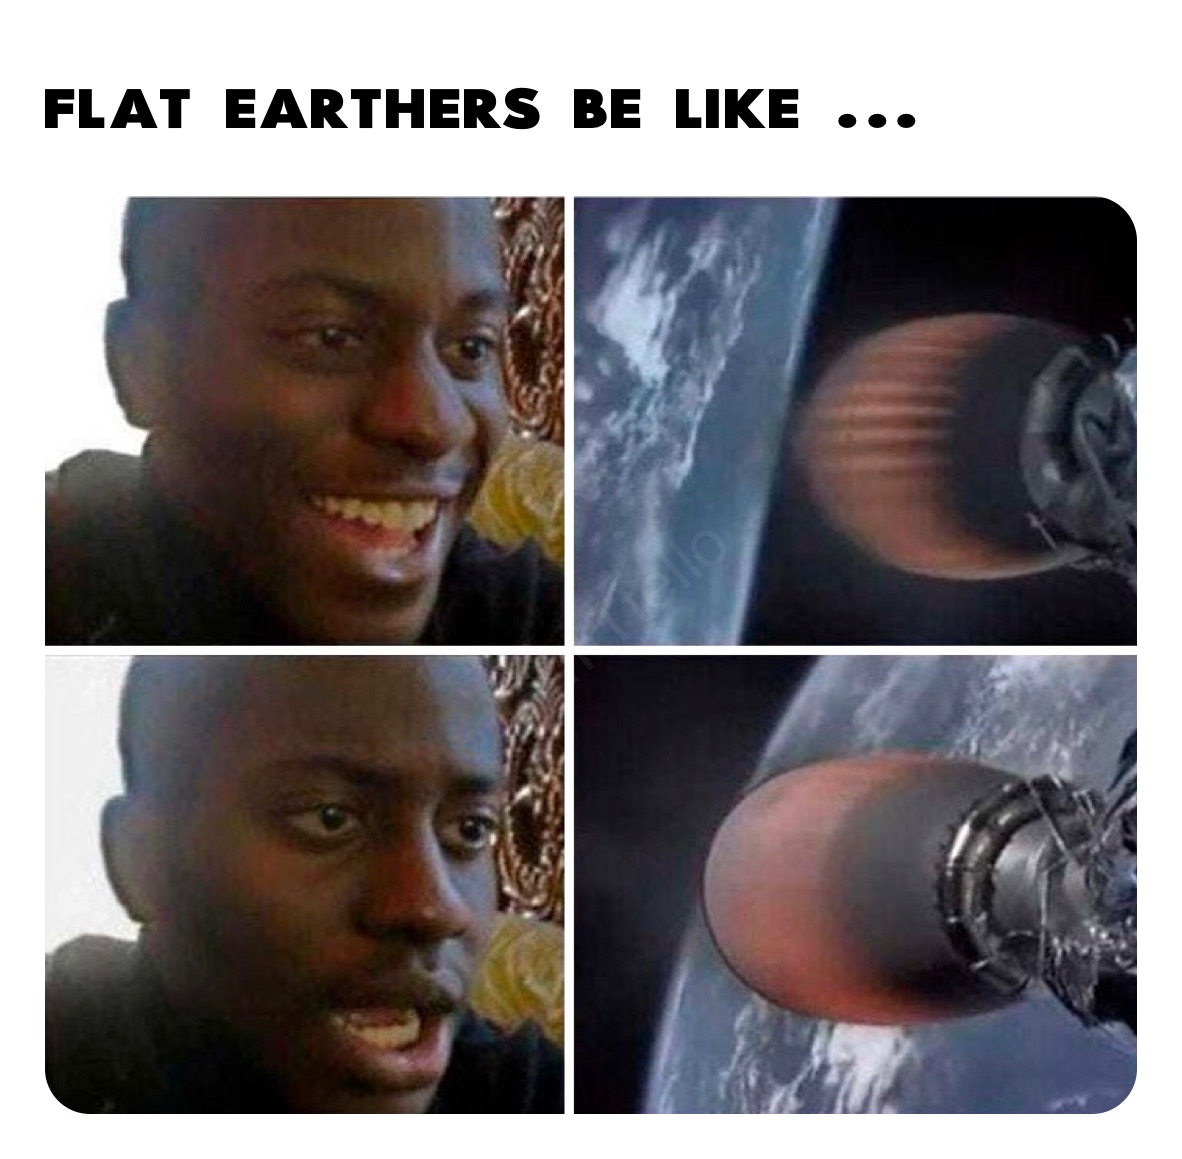 Flat Earthers be like ...